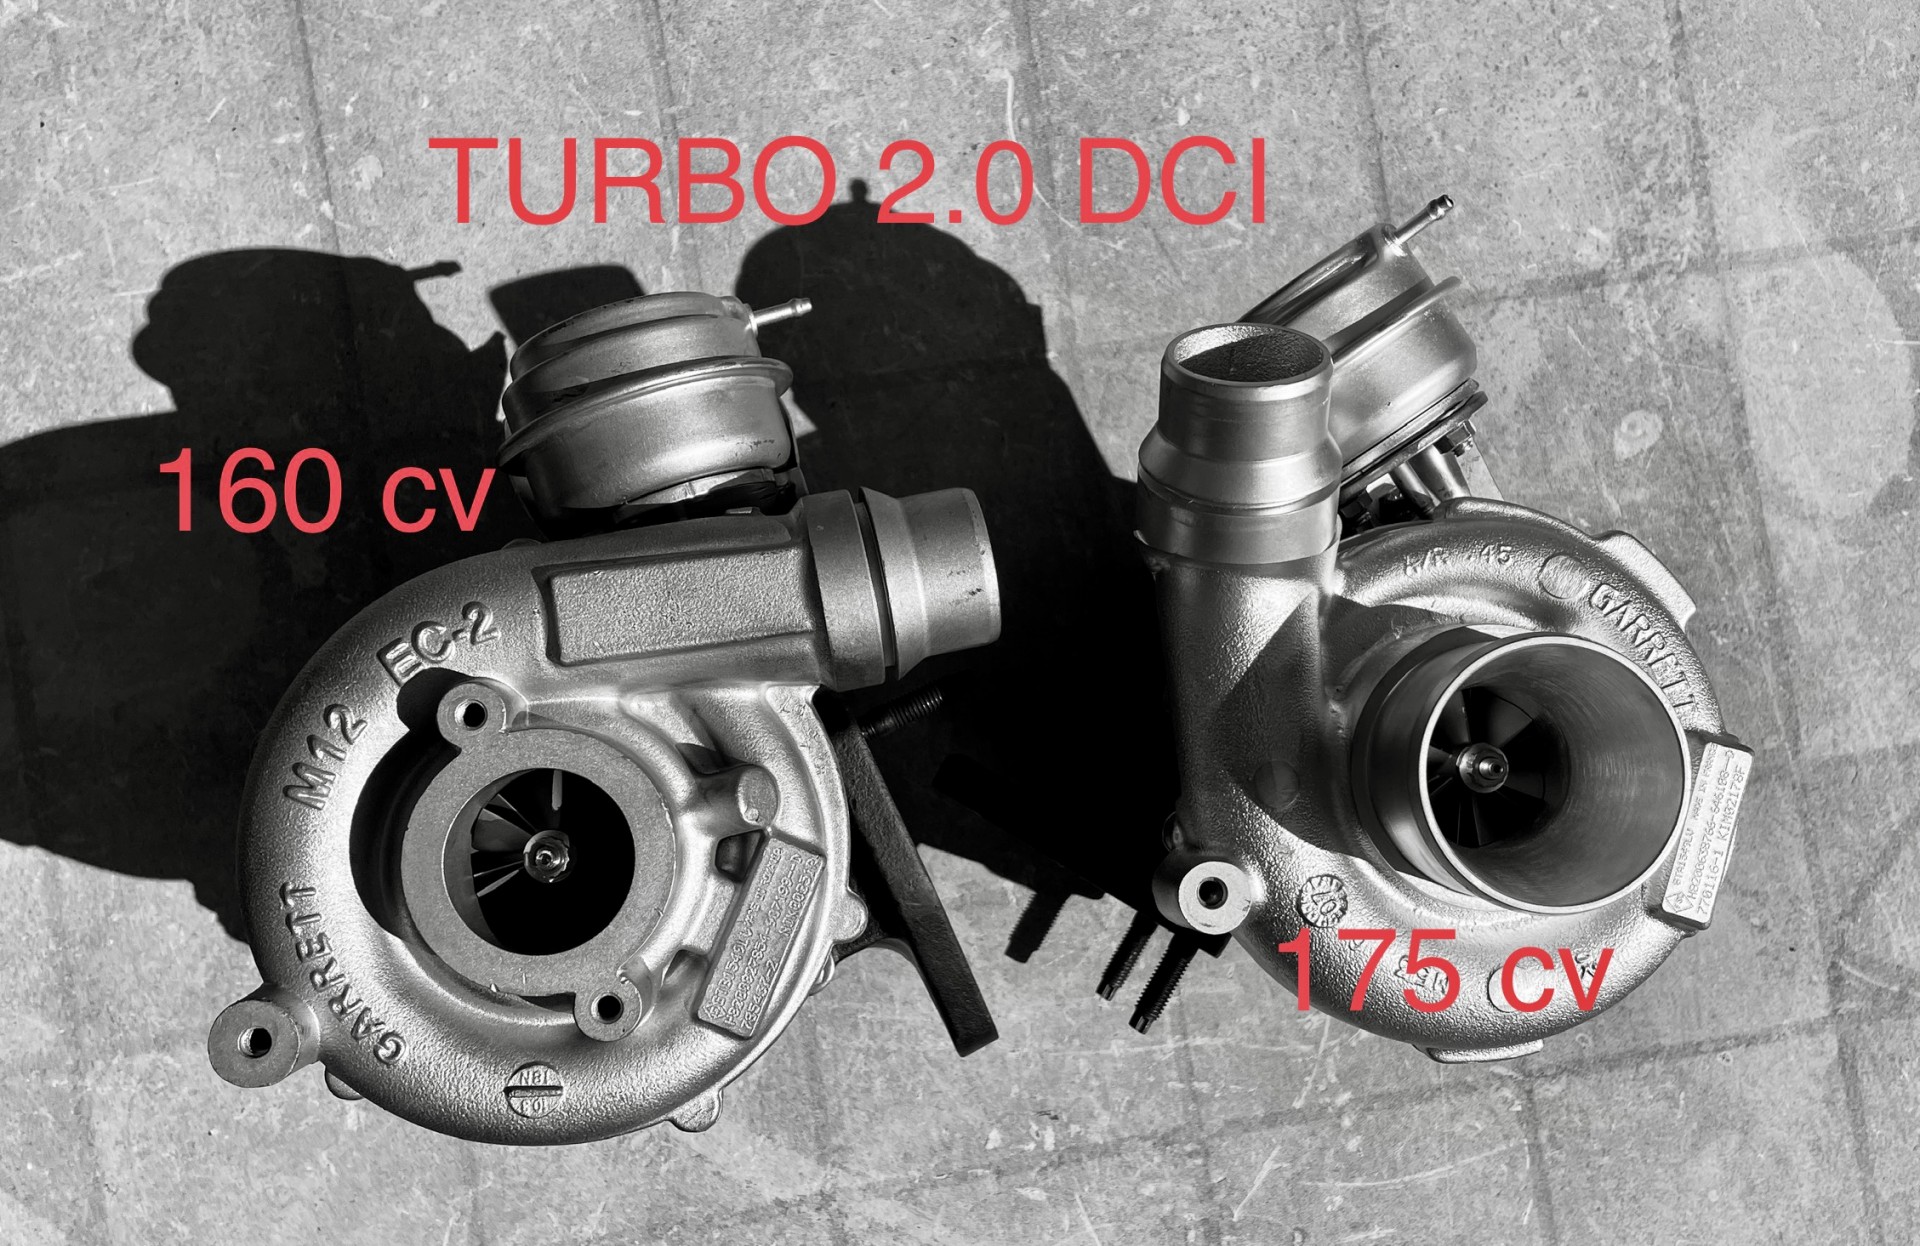 Turbo 2.0 DCI 160 & 2.0 DCI 175